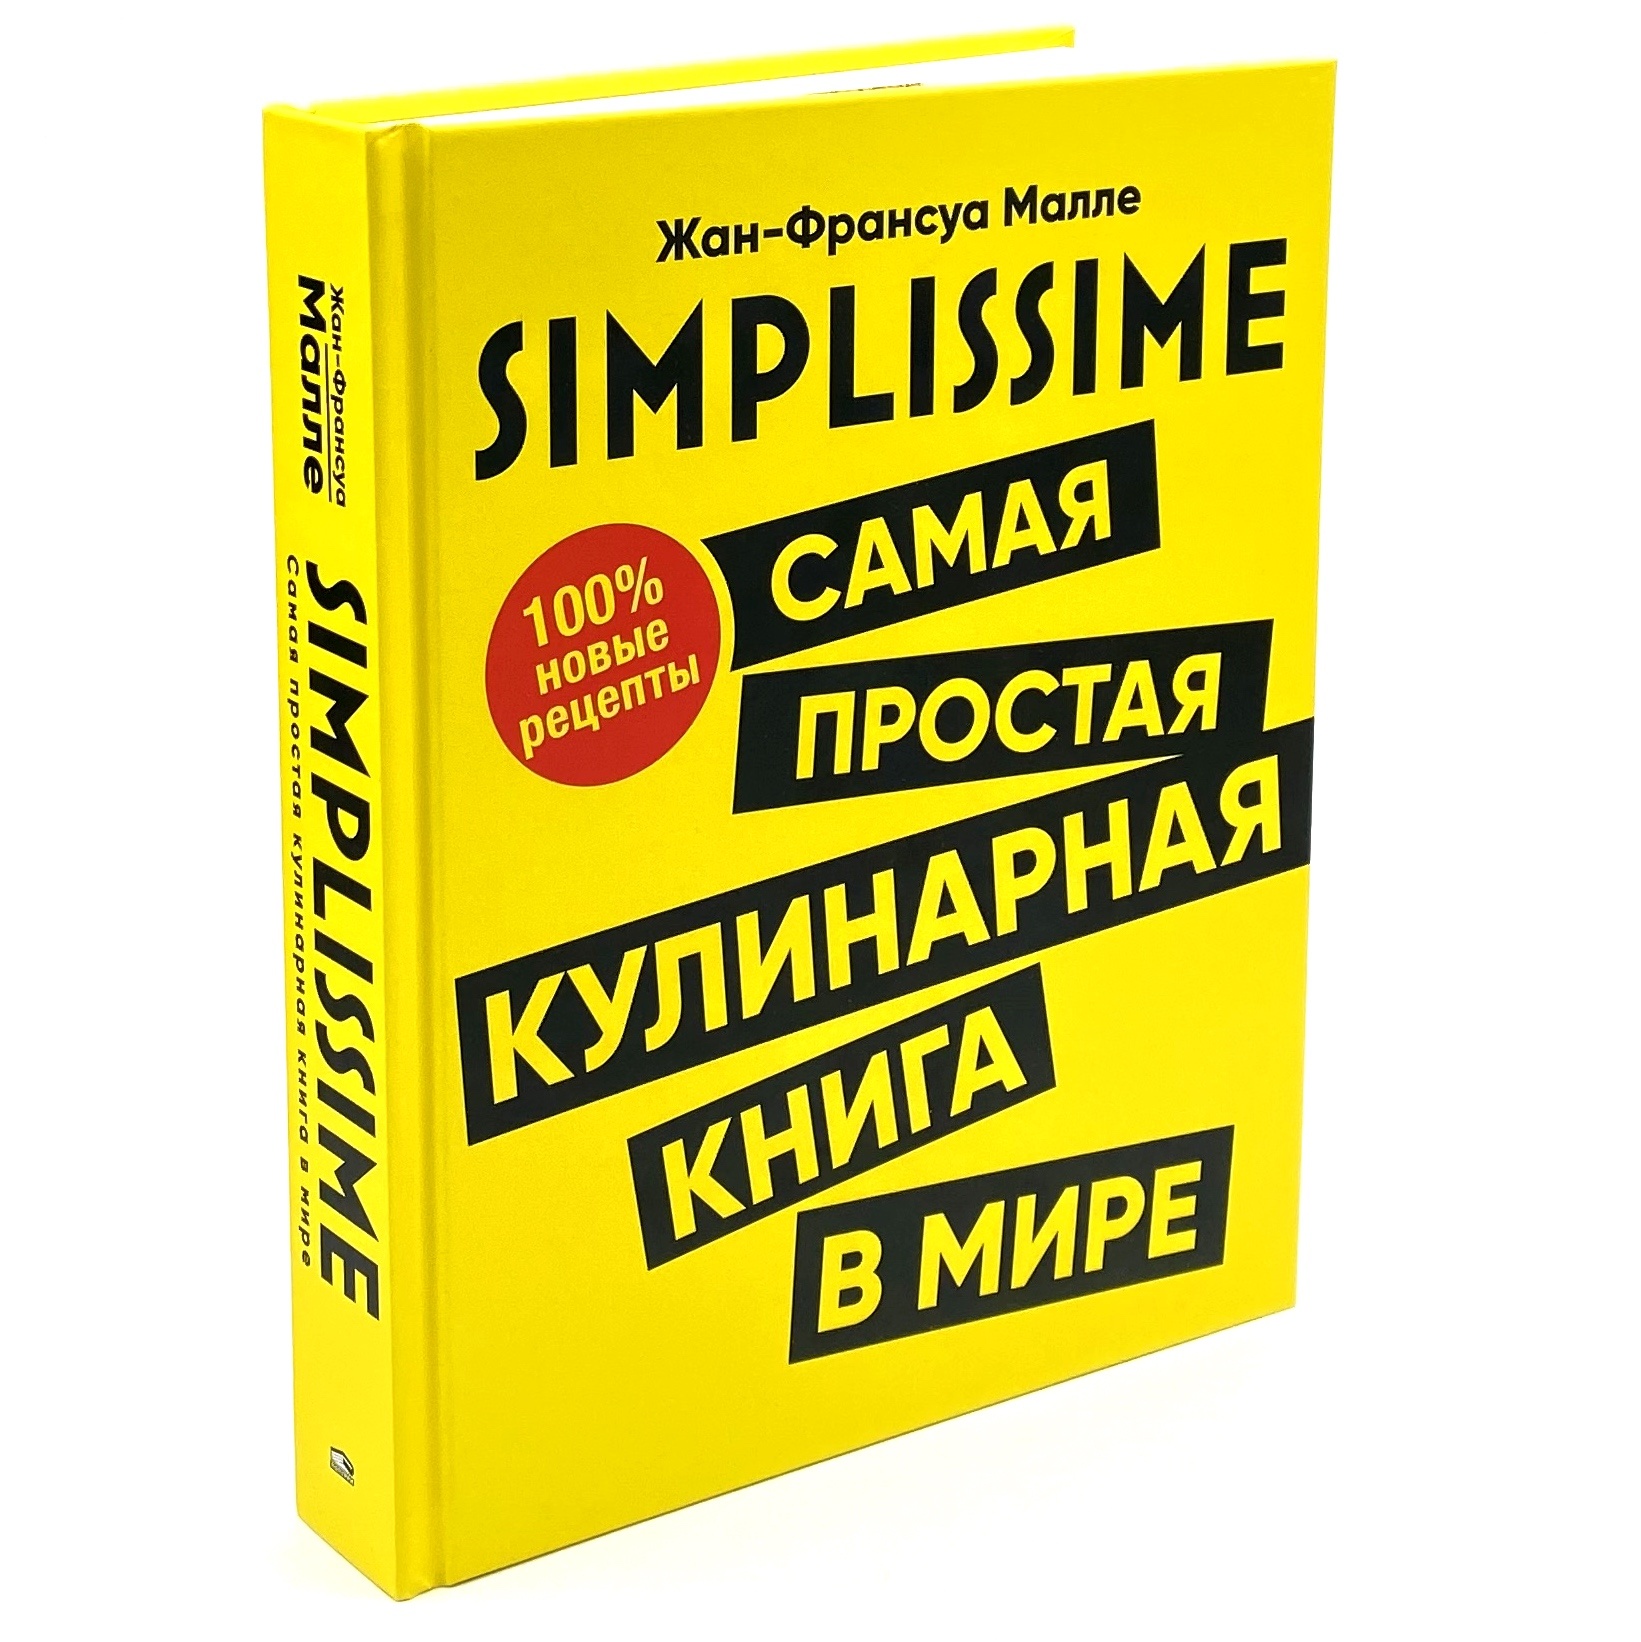 SIMPLISSIME. Самая простая кулинарная книга в мире